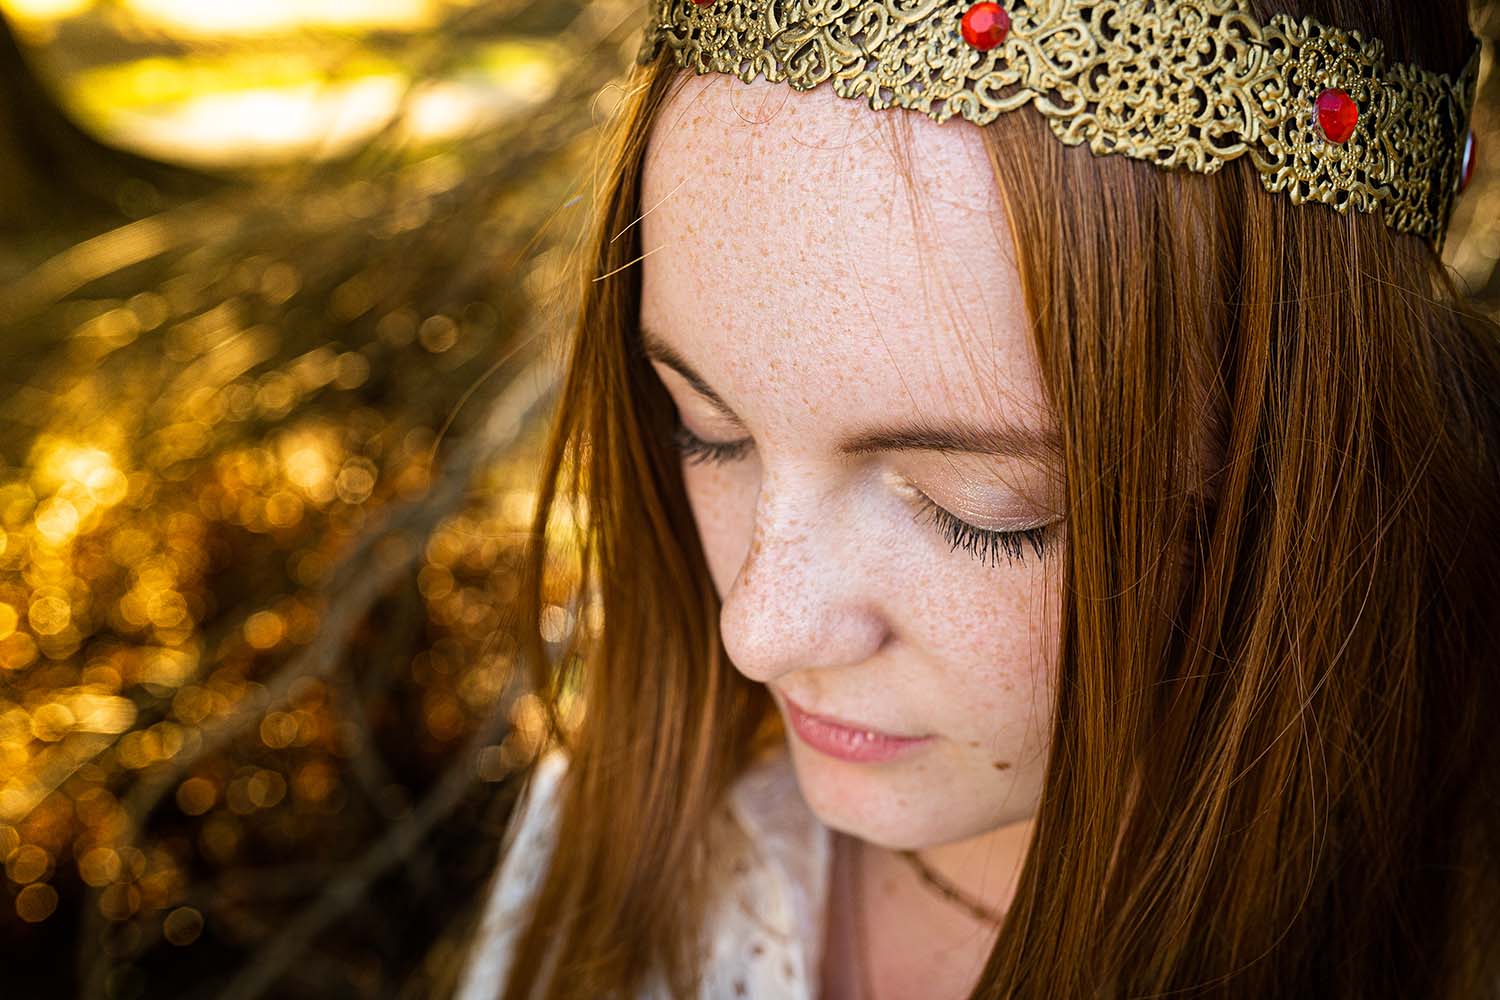 portrait artistique en couleur d'une jeune femme rousse avec une couronne dorée avec des gemmes rouges